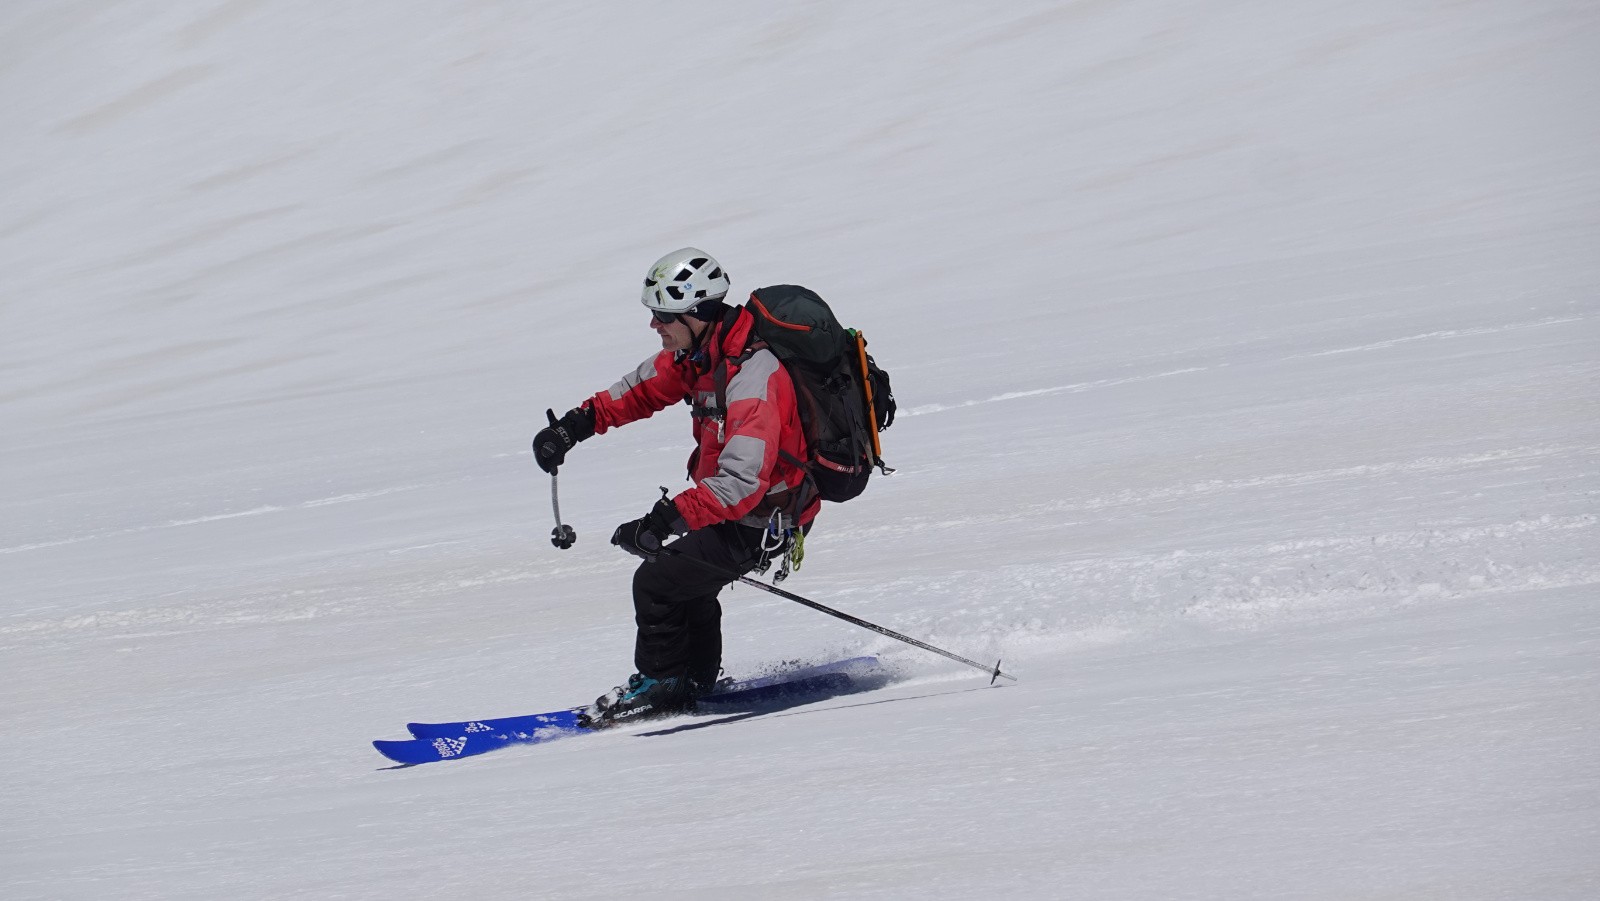 Neige lisse sans relief parfaite à skier